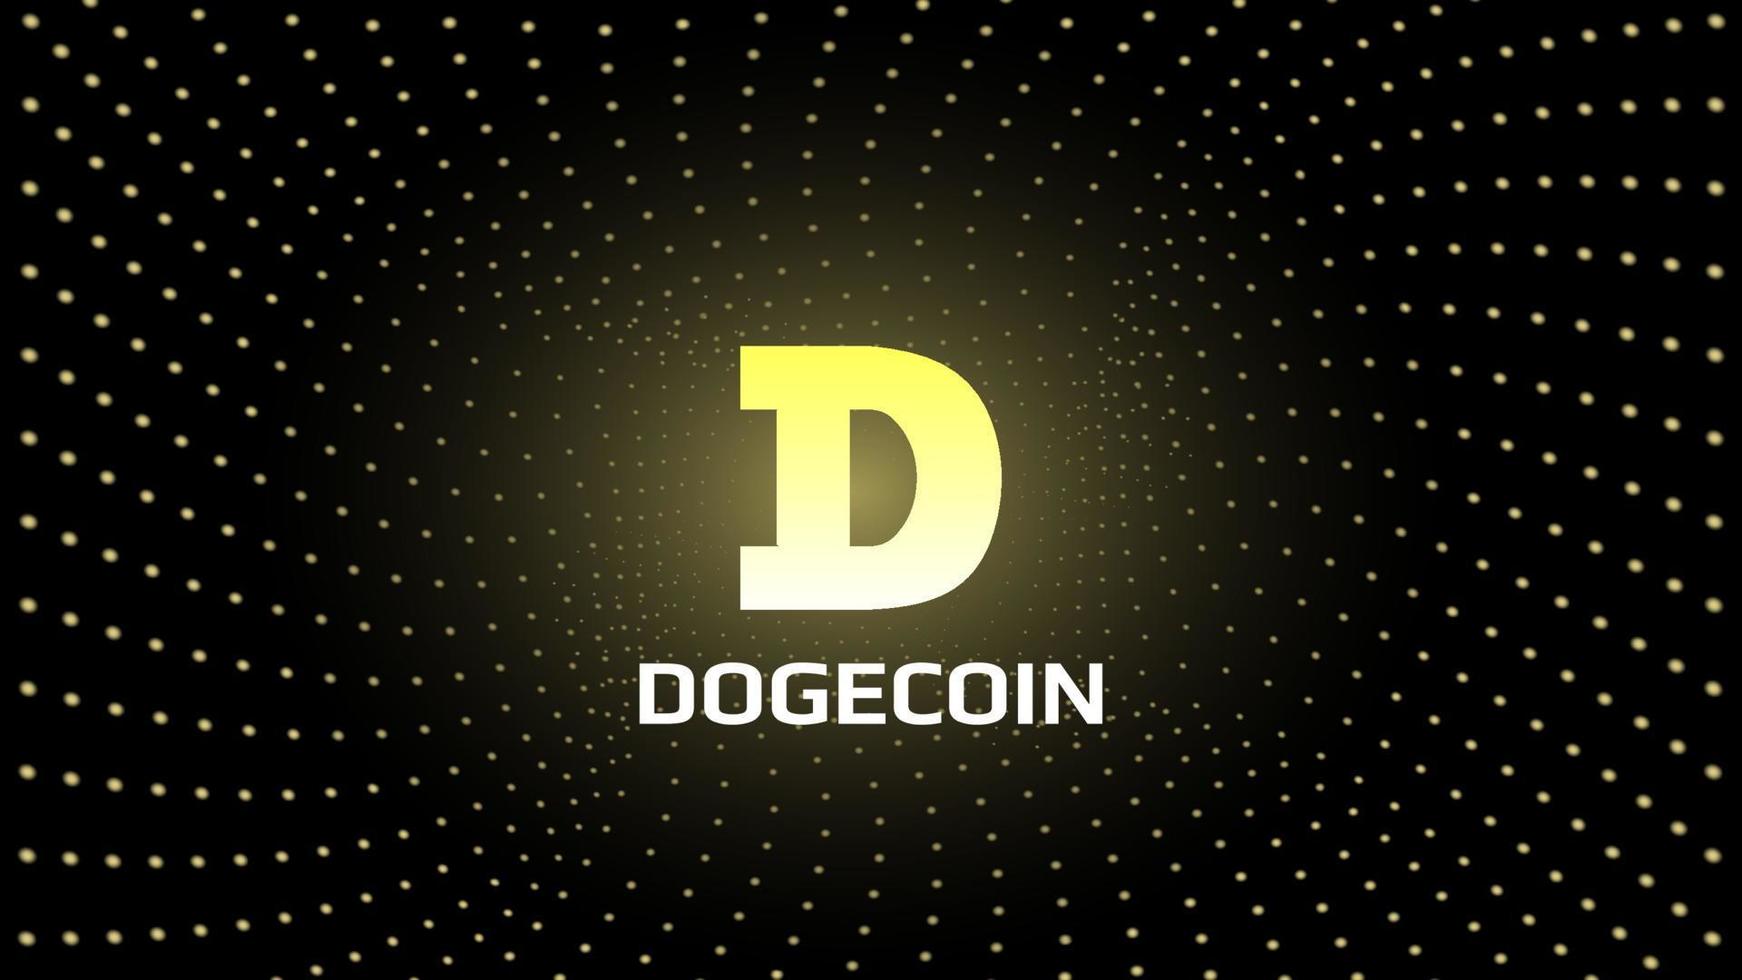 dogecoin doge token token cryptocurrency en el centro de la espiral de puntos amarillos brillantes sobre fondo oscuro. icono del logotipo de criptomoneda para banner o noticias. ilustración vectorial vector